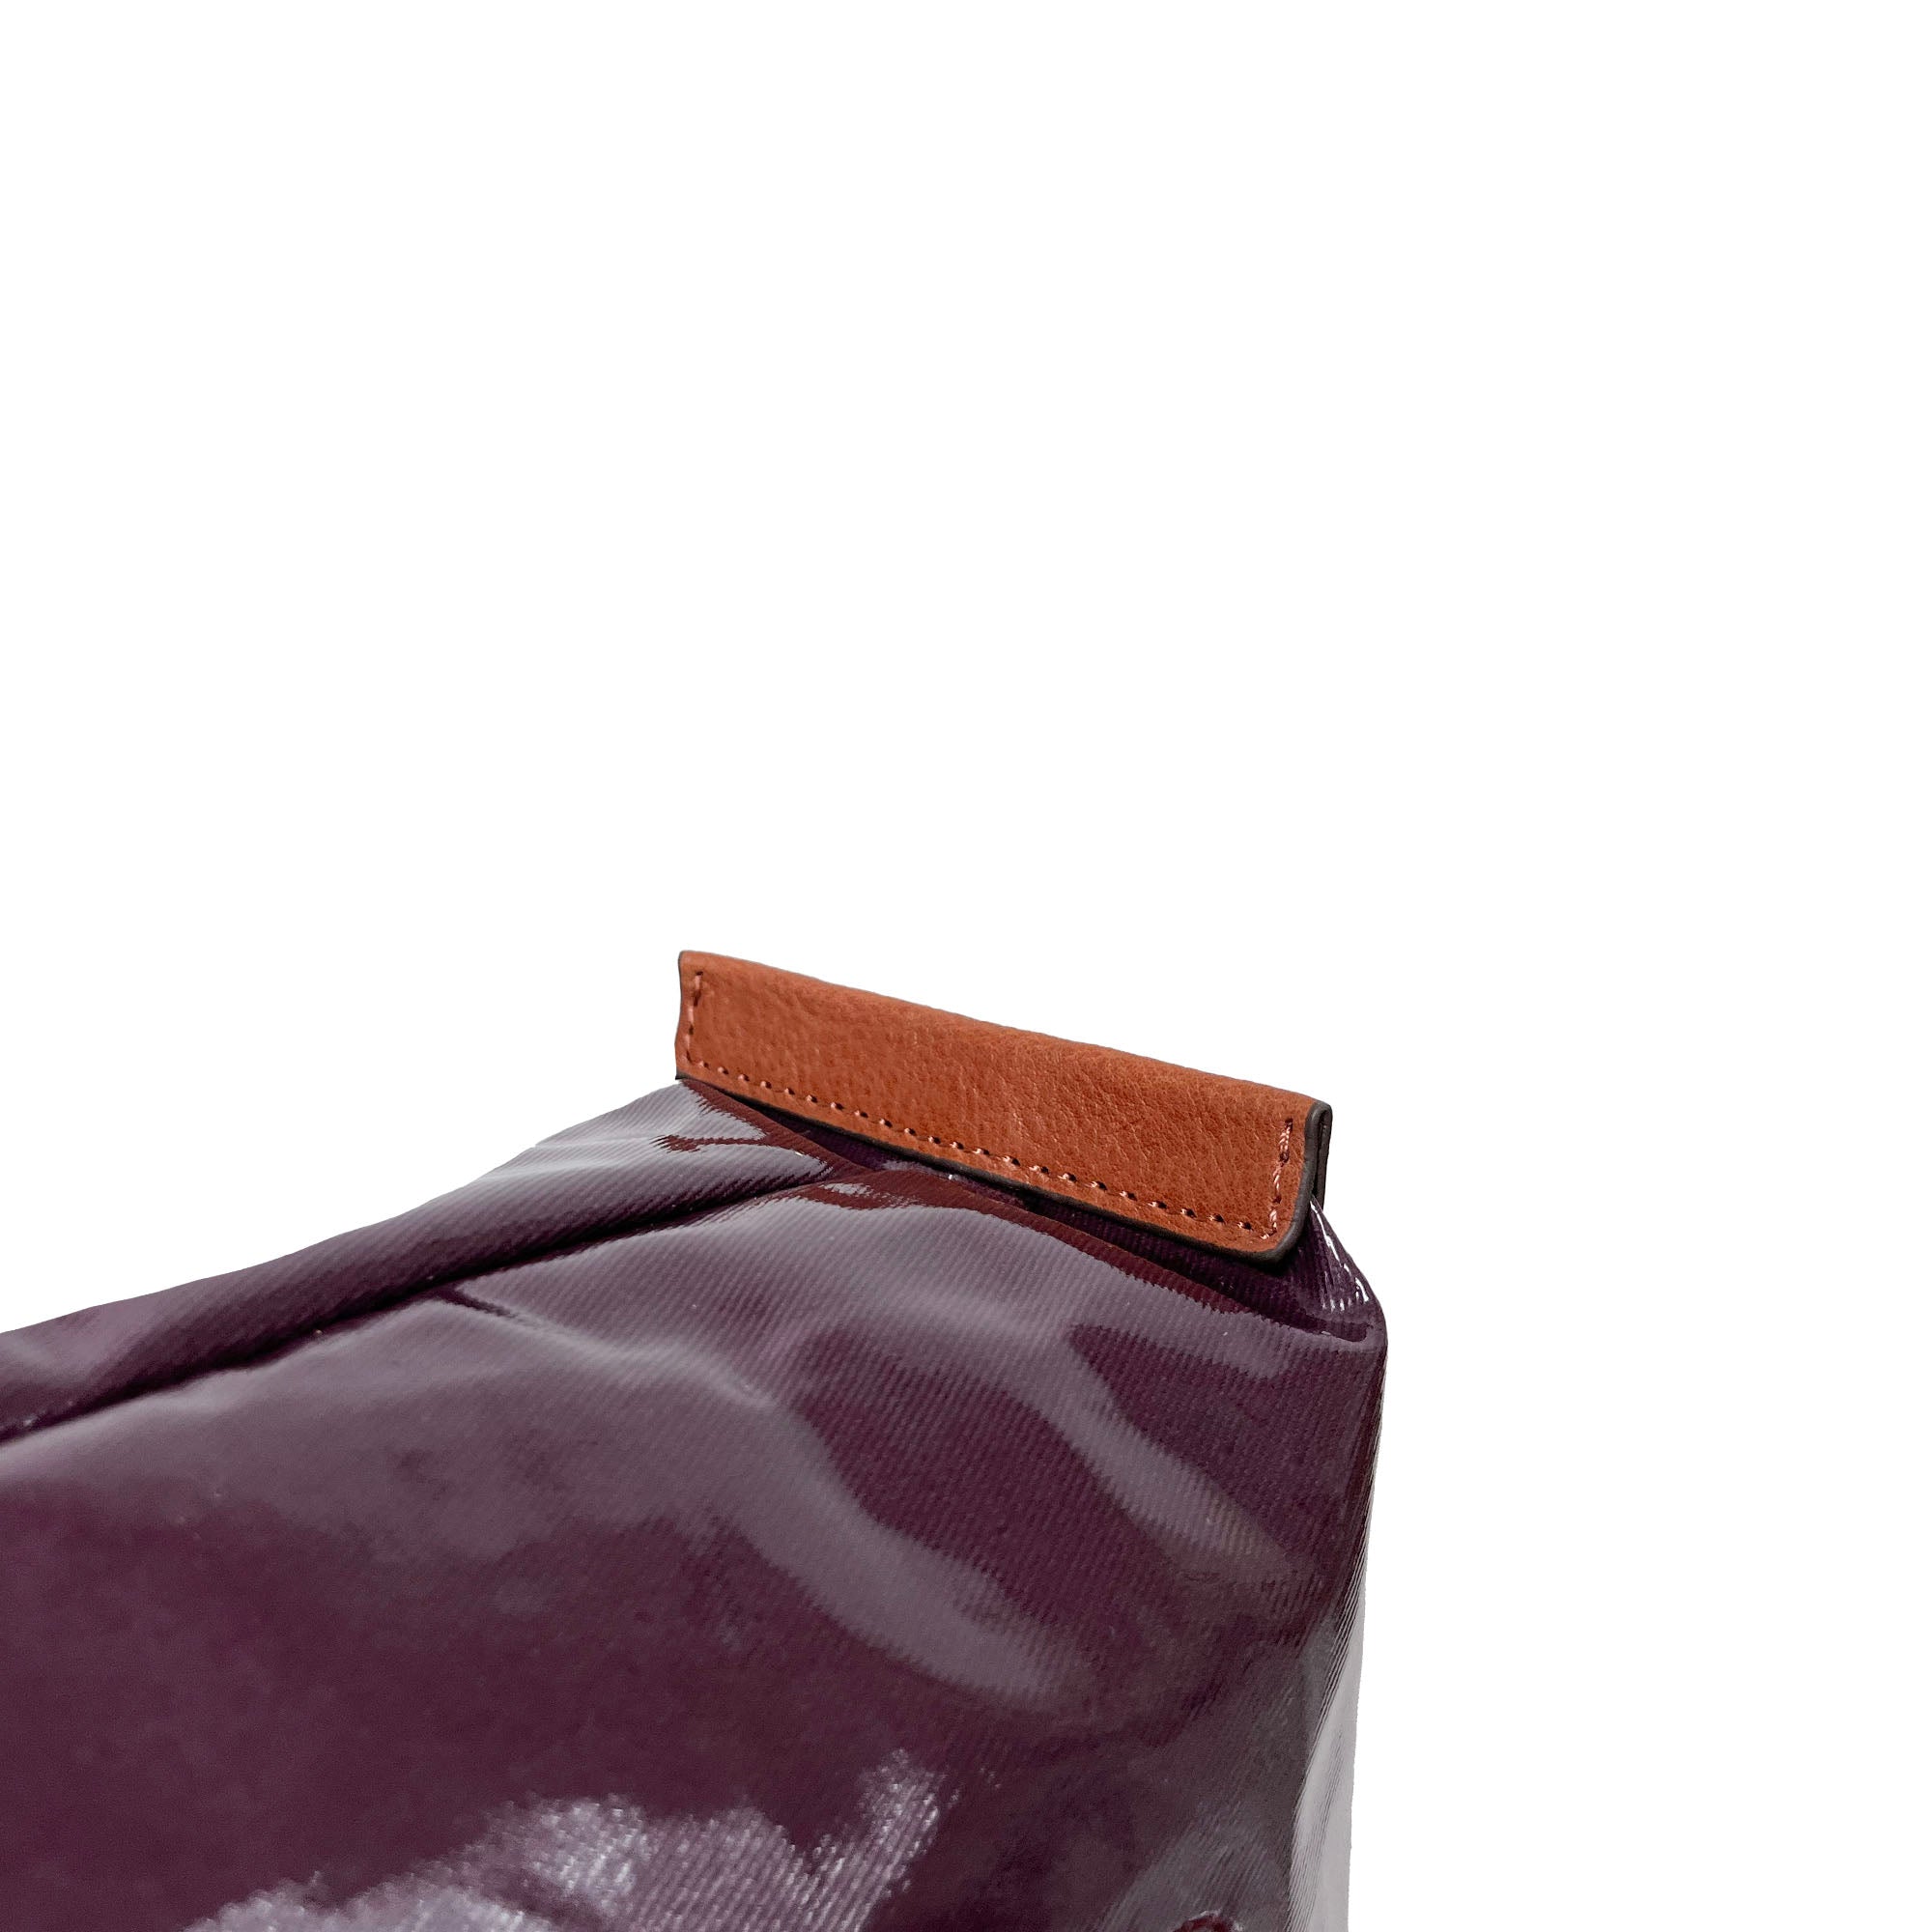 LIFE |  Waterproof Tote Bag (Violet Purple)